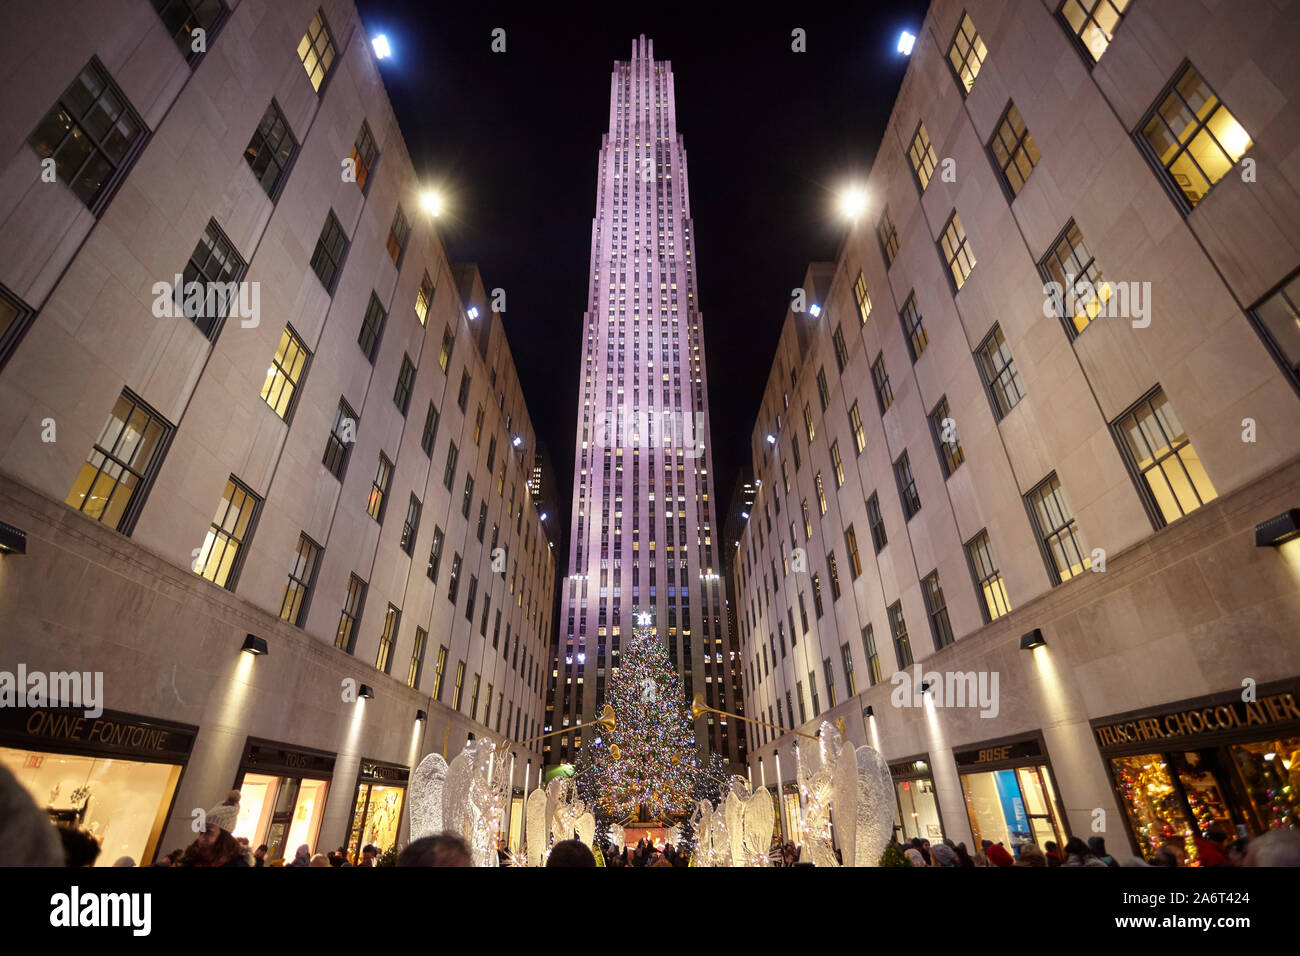 Le celebrazioni del Natale al Rockefeller Center di New York, Stati Uniti d'America. Foto Stock